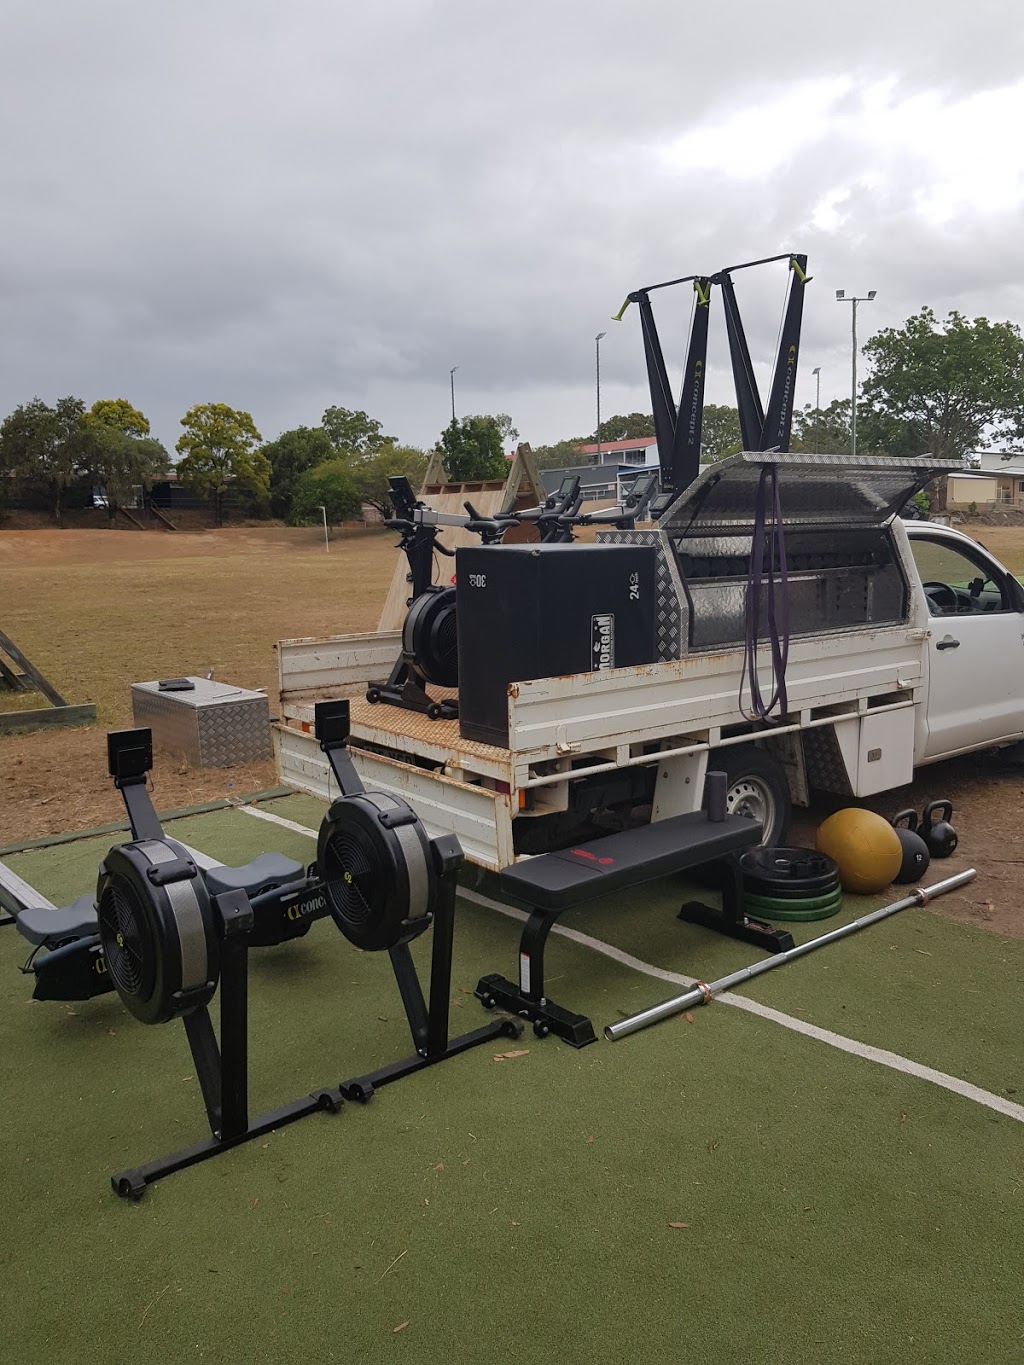 Setts Fitness | 16-26 Archer St, Upper Mount Gravatt QLD 4122, Australia | Phone: 0417 879 634